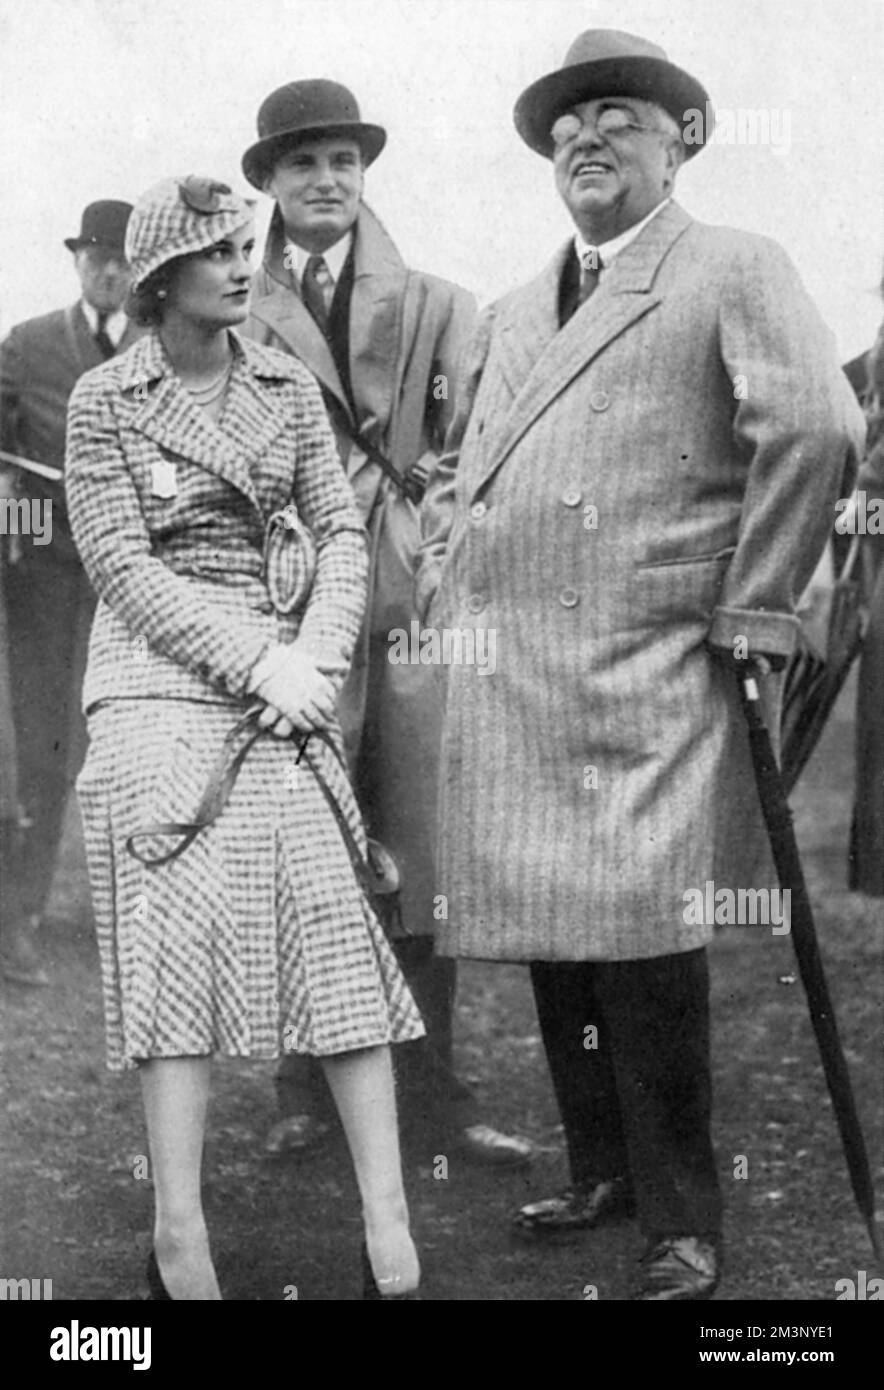 Margaret Whigham (1912-1993), successivamente la signora Charles Sweeny e poi Margaret Campbell, duchessa di Argyll, nella foto del 1931, durante la gara autunnale di Newbury con H.H. Il principe Aga Khan, che aveva sette cavalli in corsa alla riunione. Il figlio dell'Aga Khan, il principe Aly Khan, si era innamorato di Margaret l'anno precedente, ma il romanticismo era stato scoraggiato dai suoi genitori. Data: 1931 Foto Stock